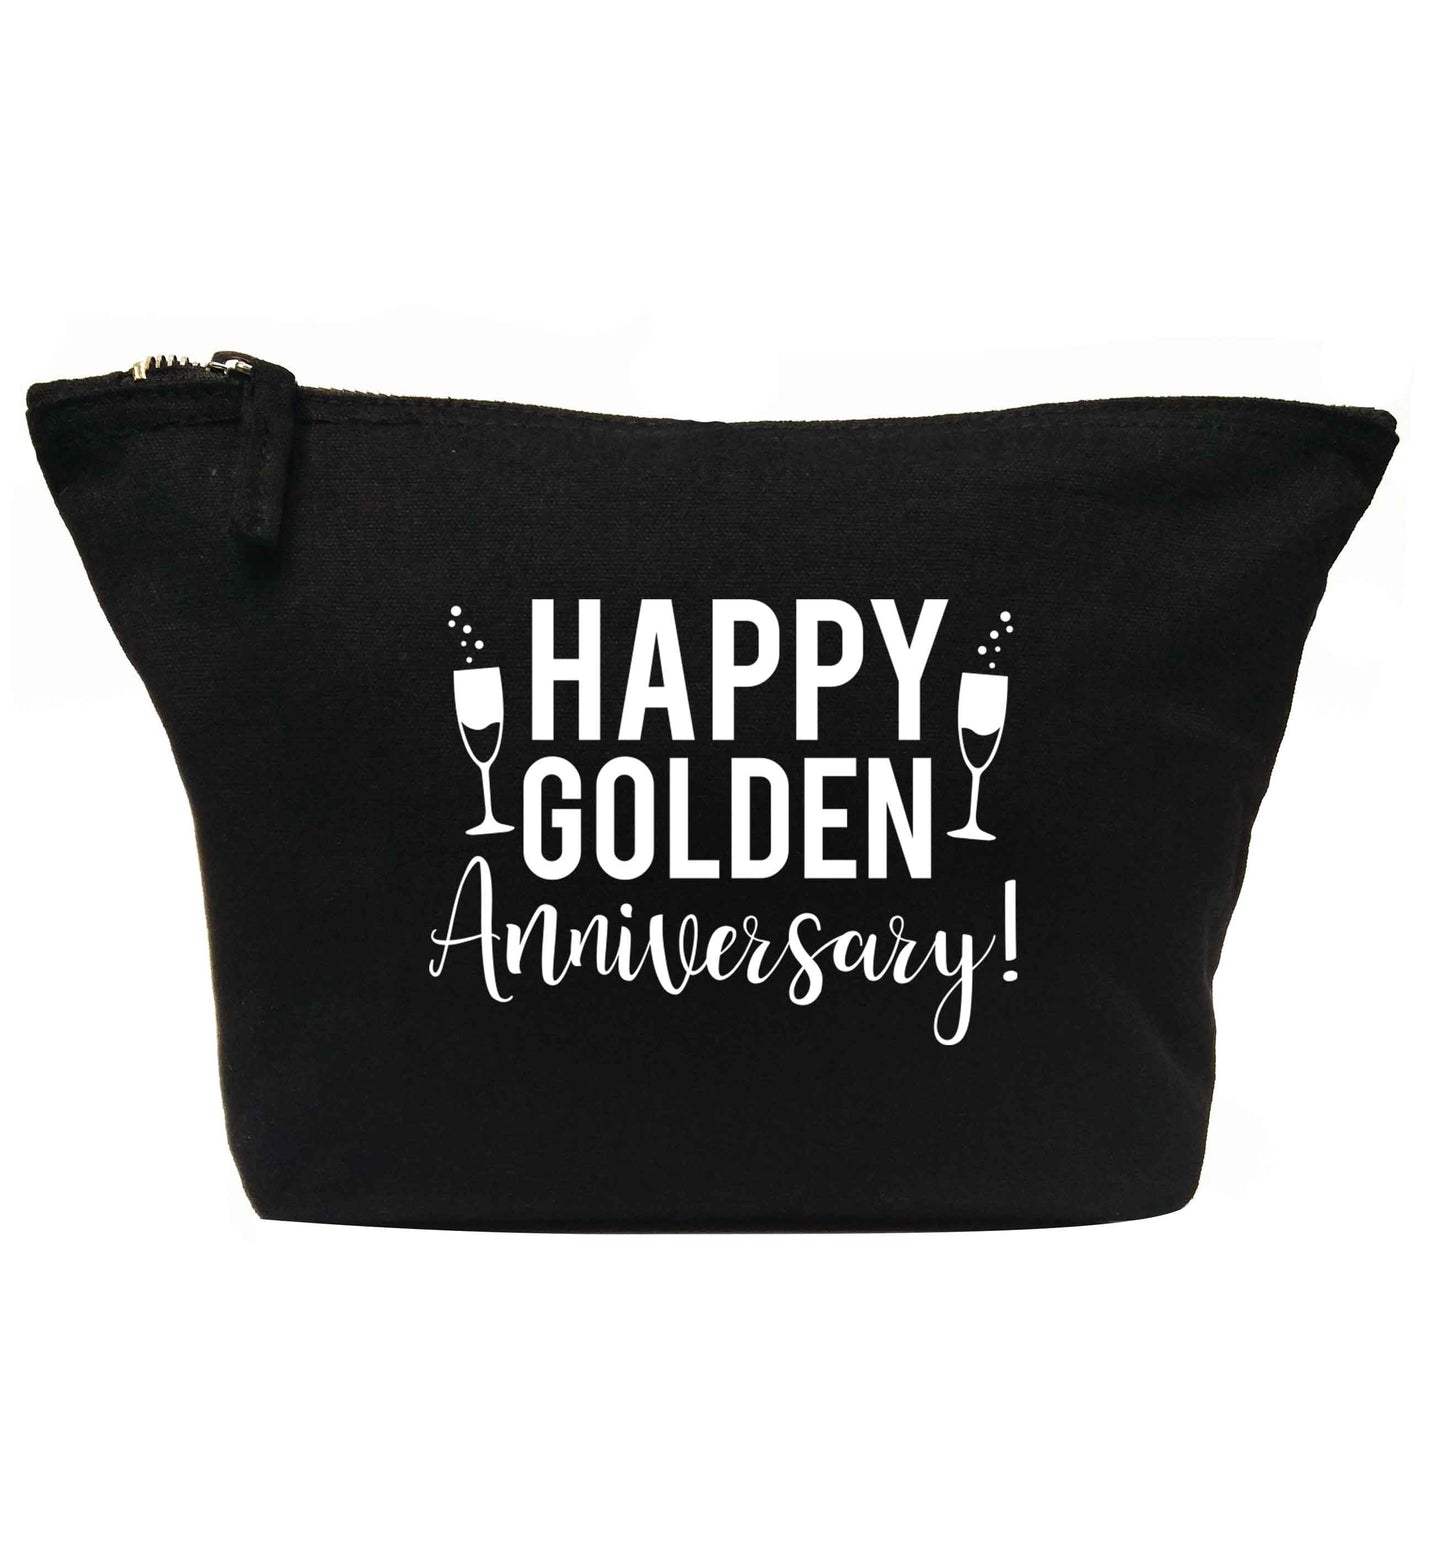 Happy golden anniversary! | Makeup / wash bag